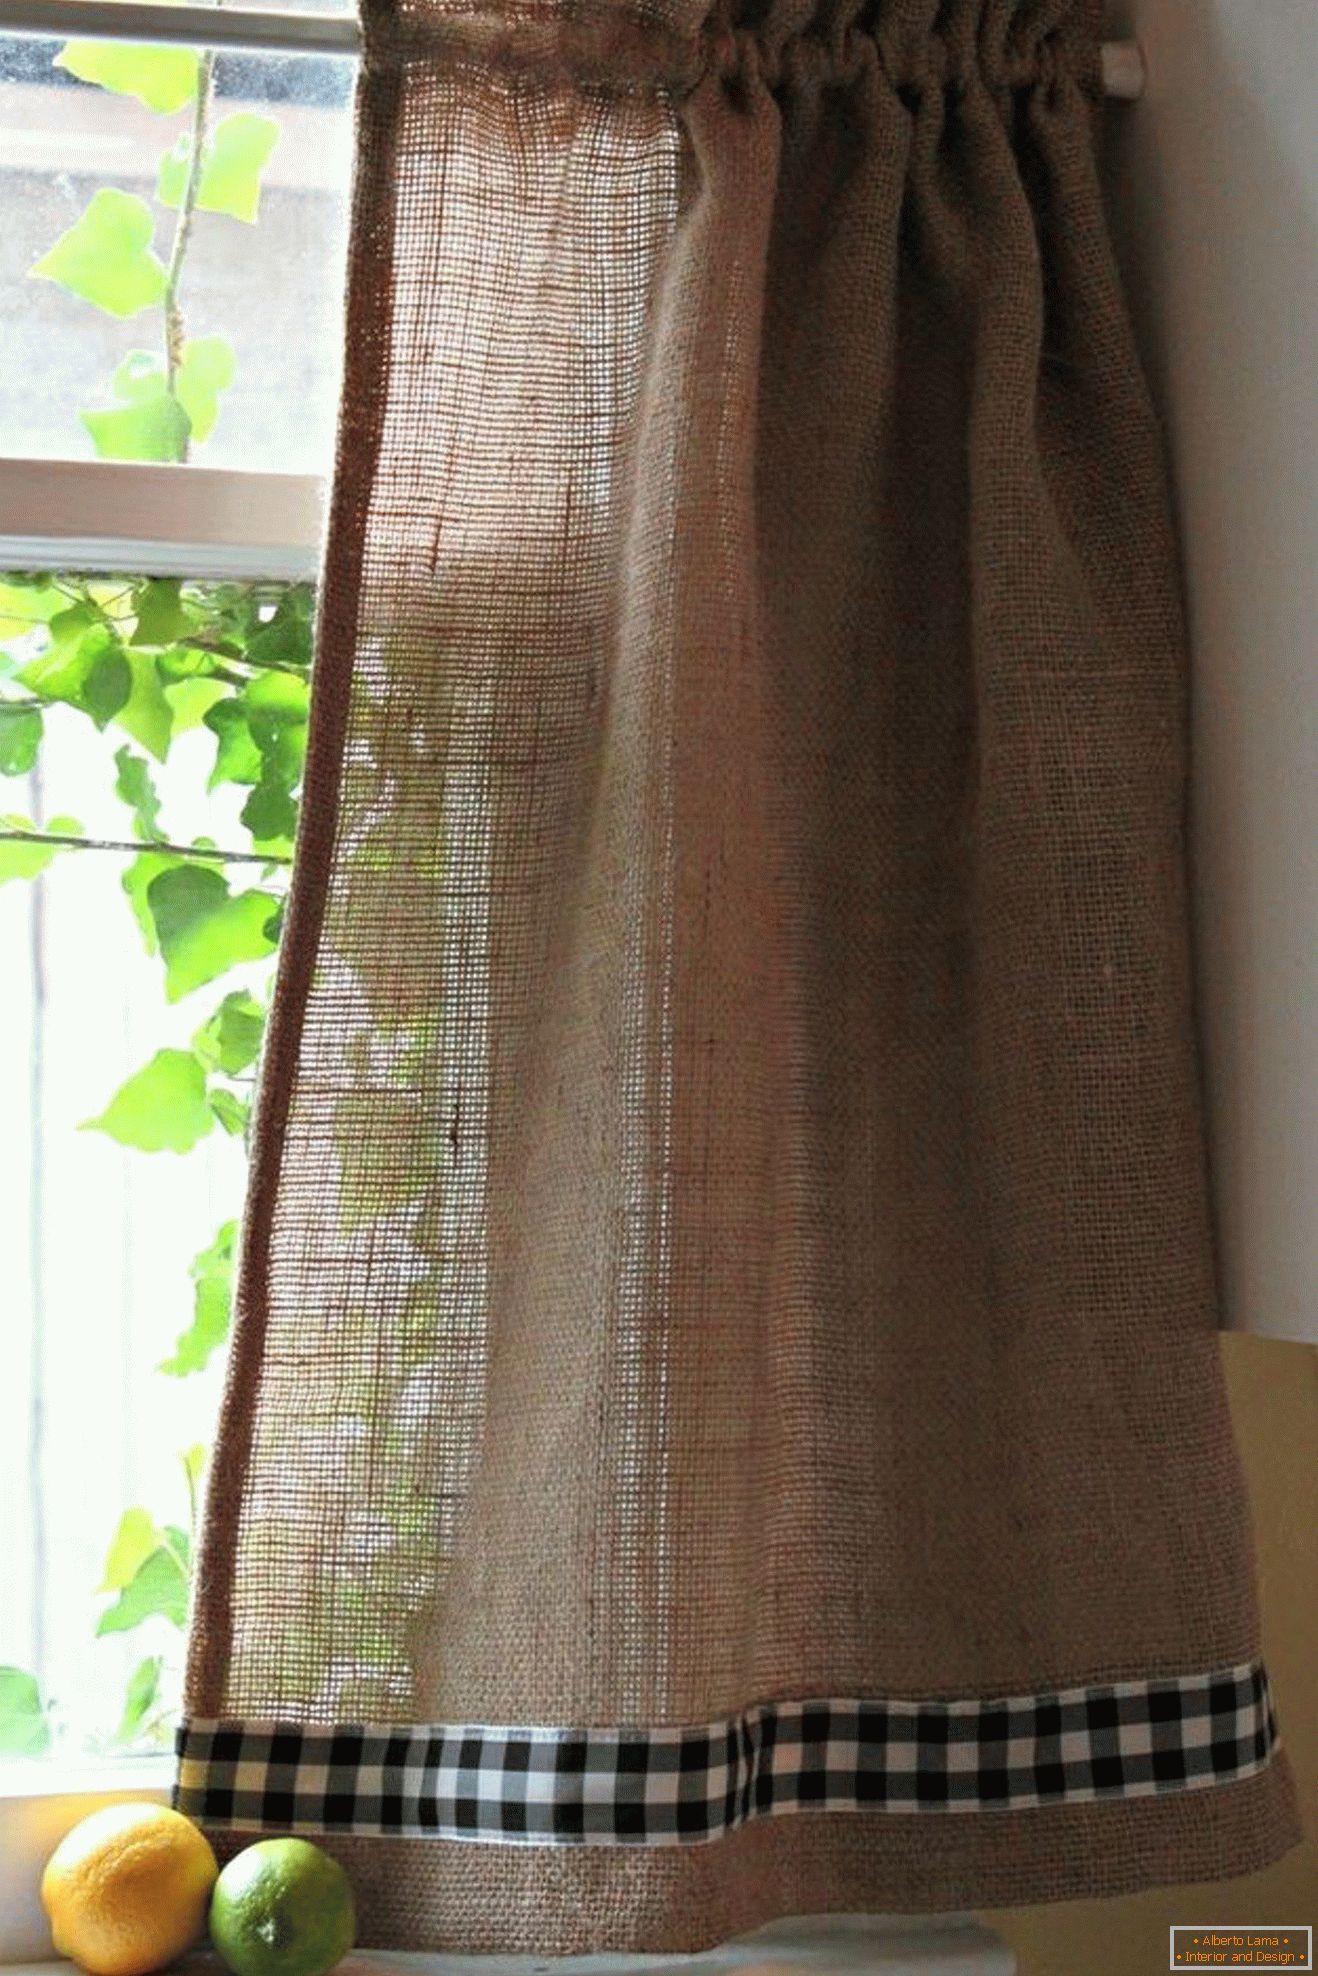 Curtain made of burlap на окне